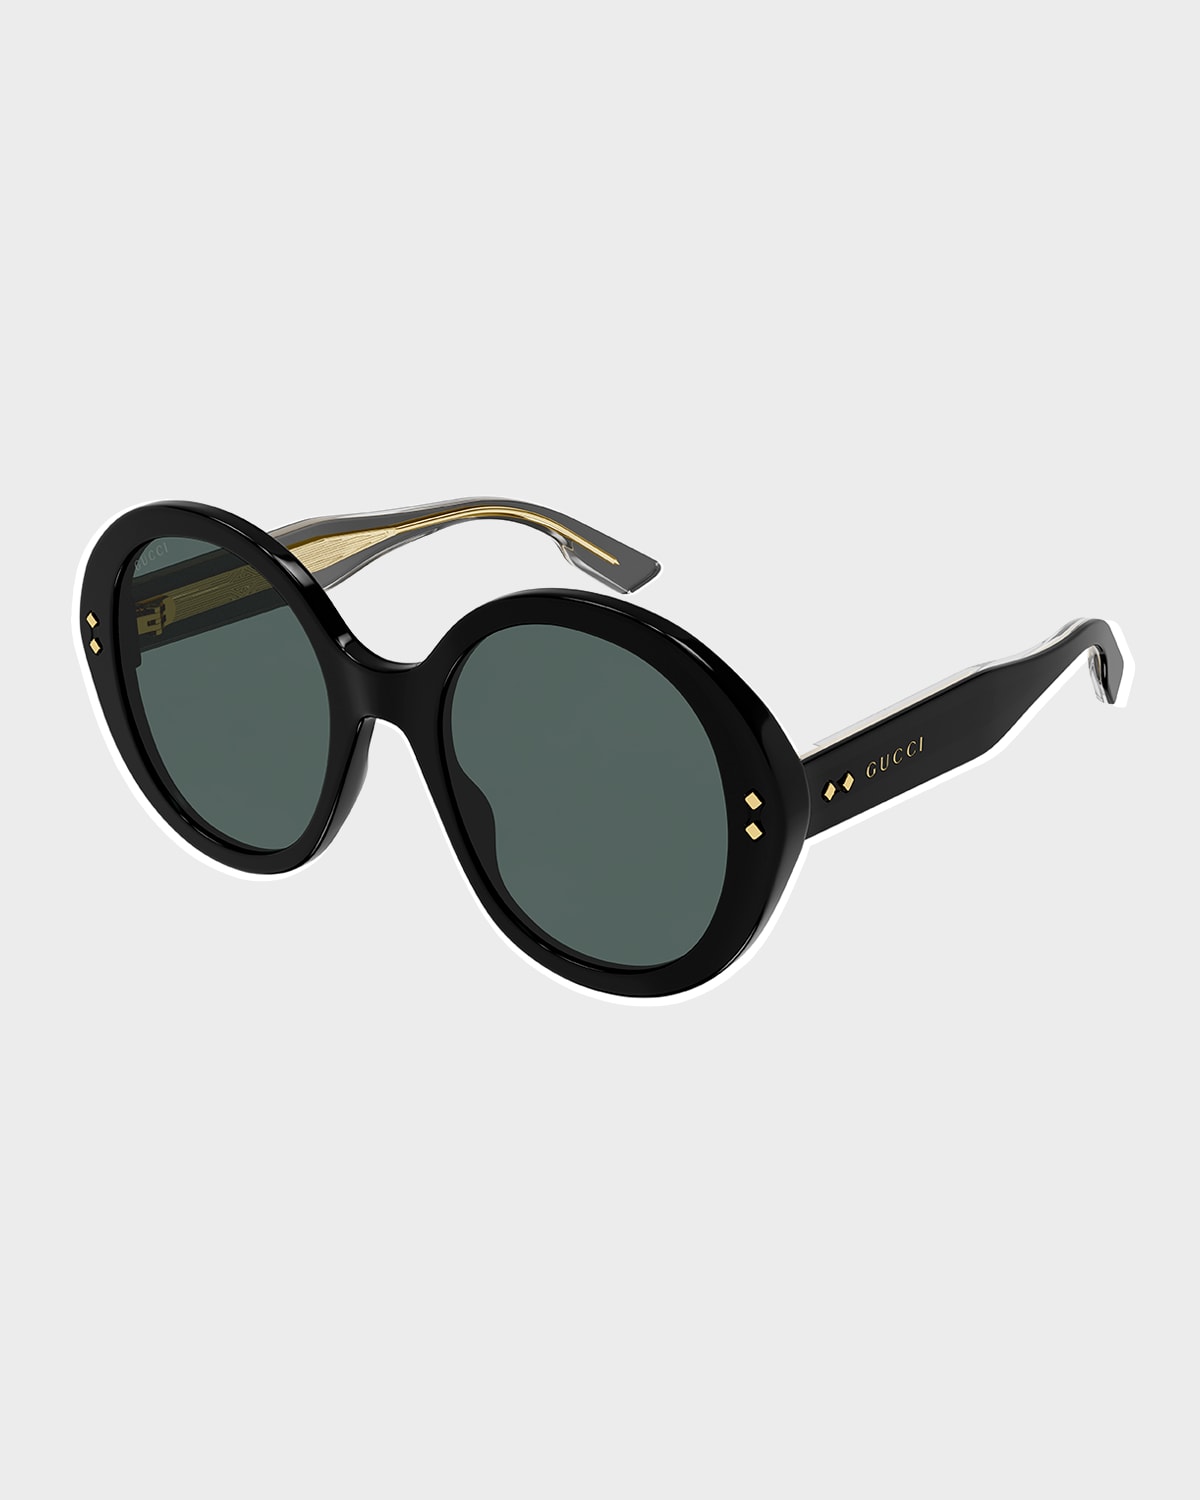 Gucci Round Acetate Sunglasses In Shiny Black